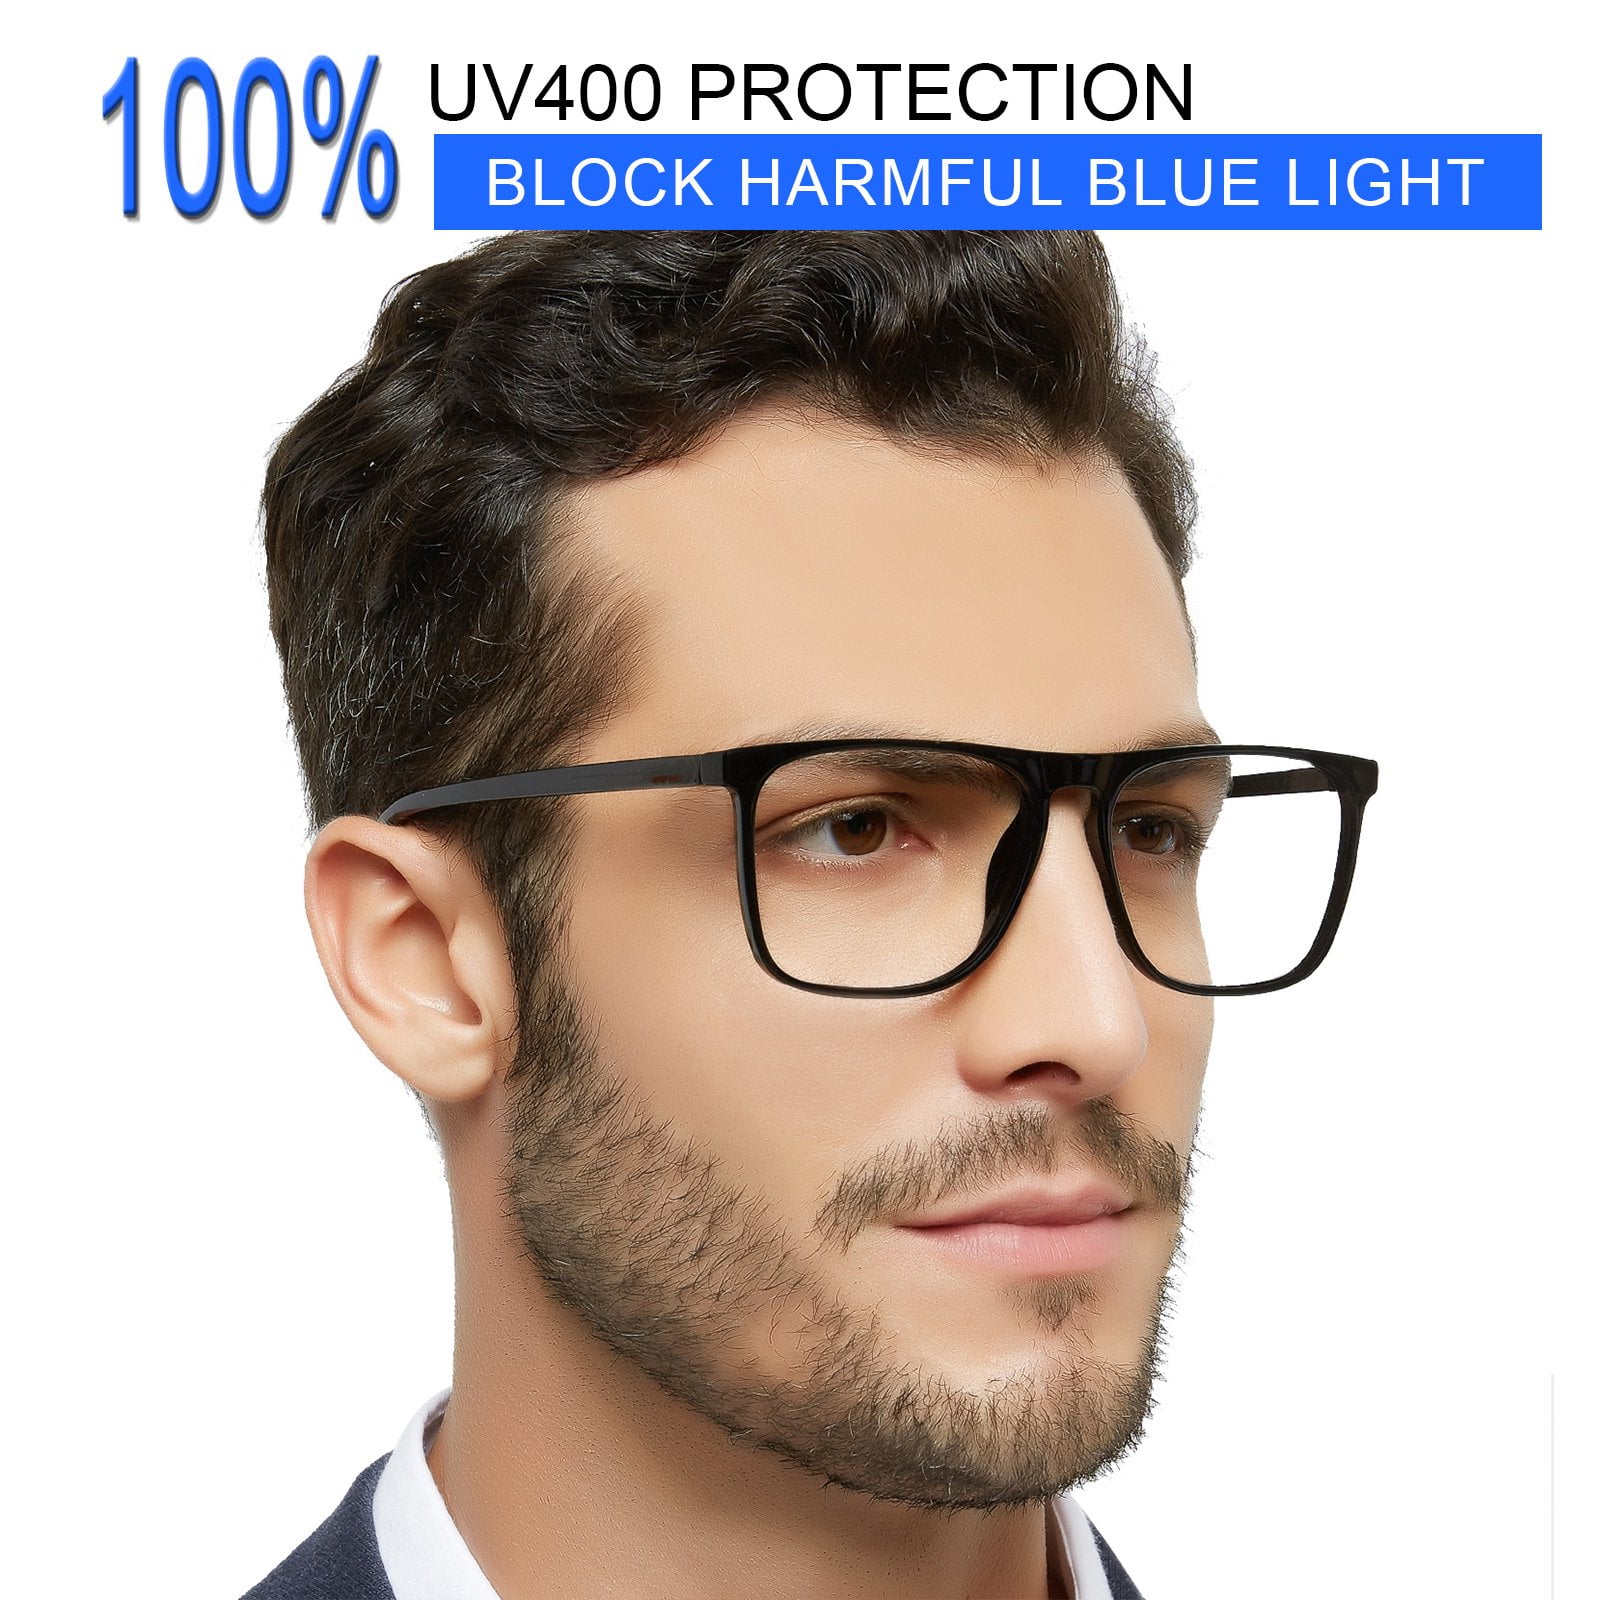 Big Frame Prescription Glasses, Eye Glasses Frames Big Men